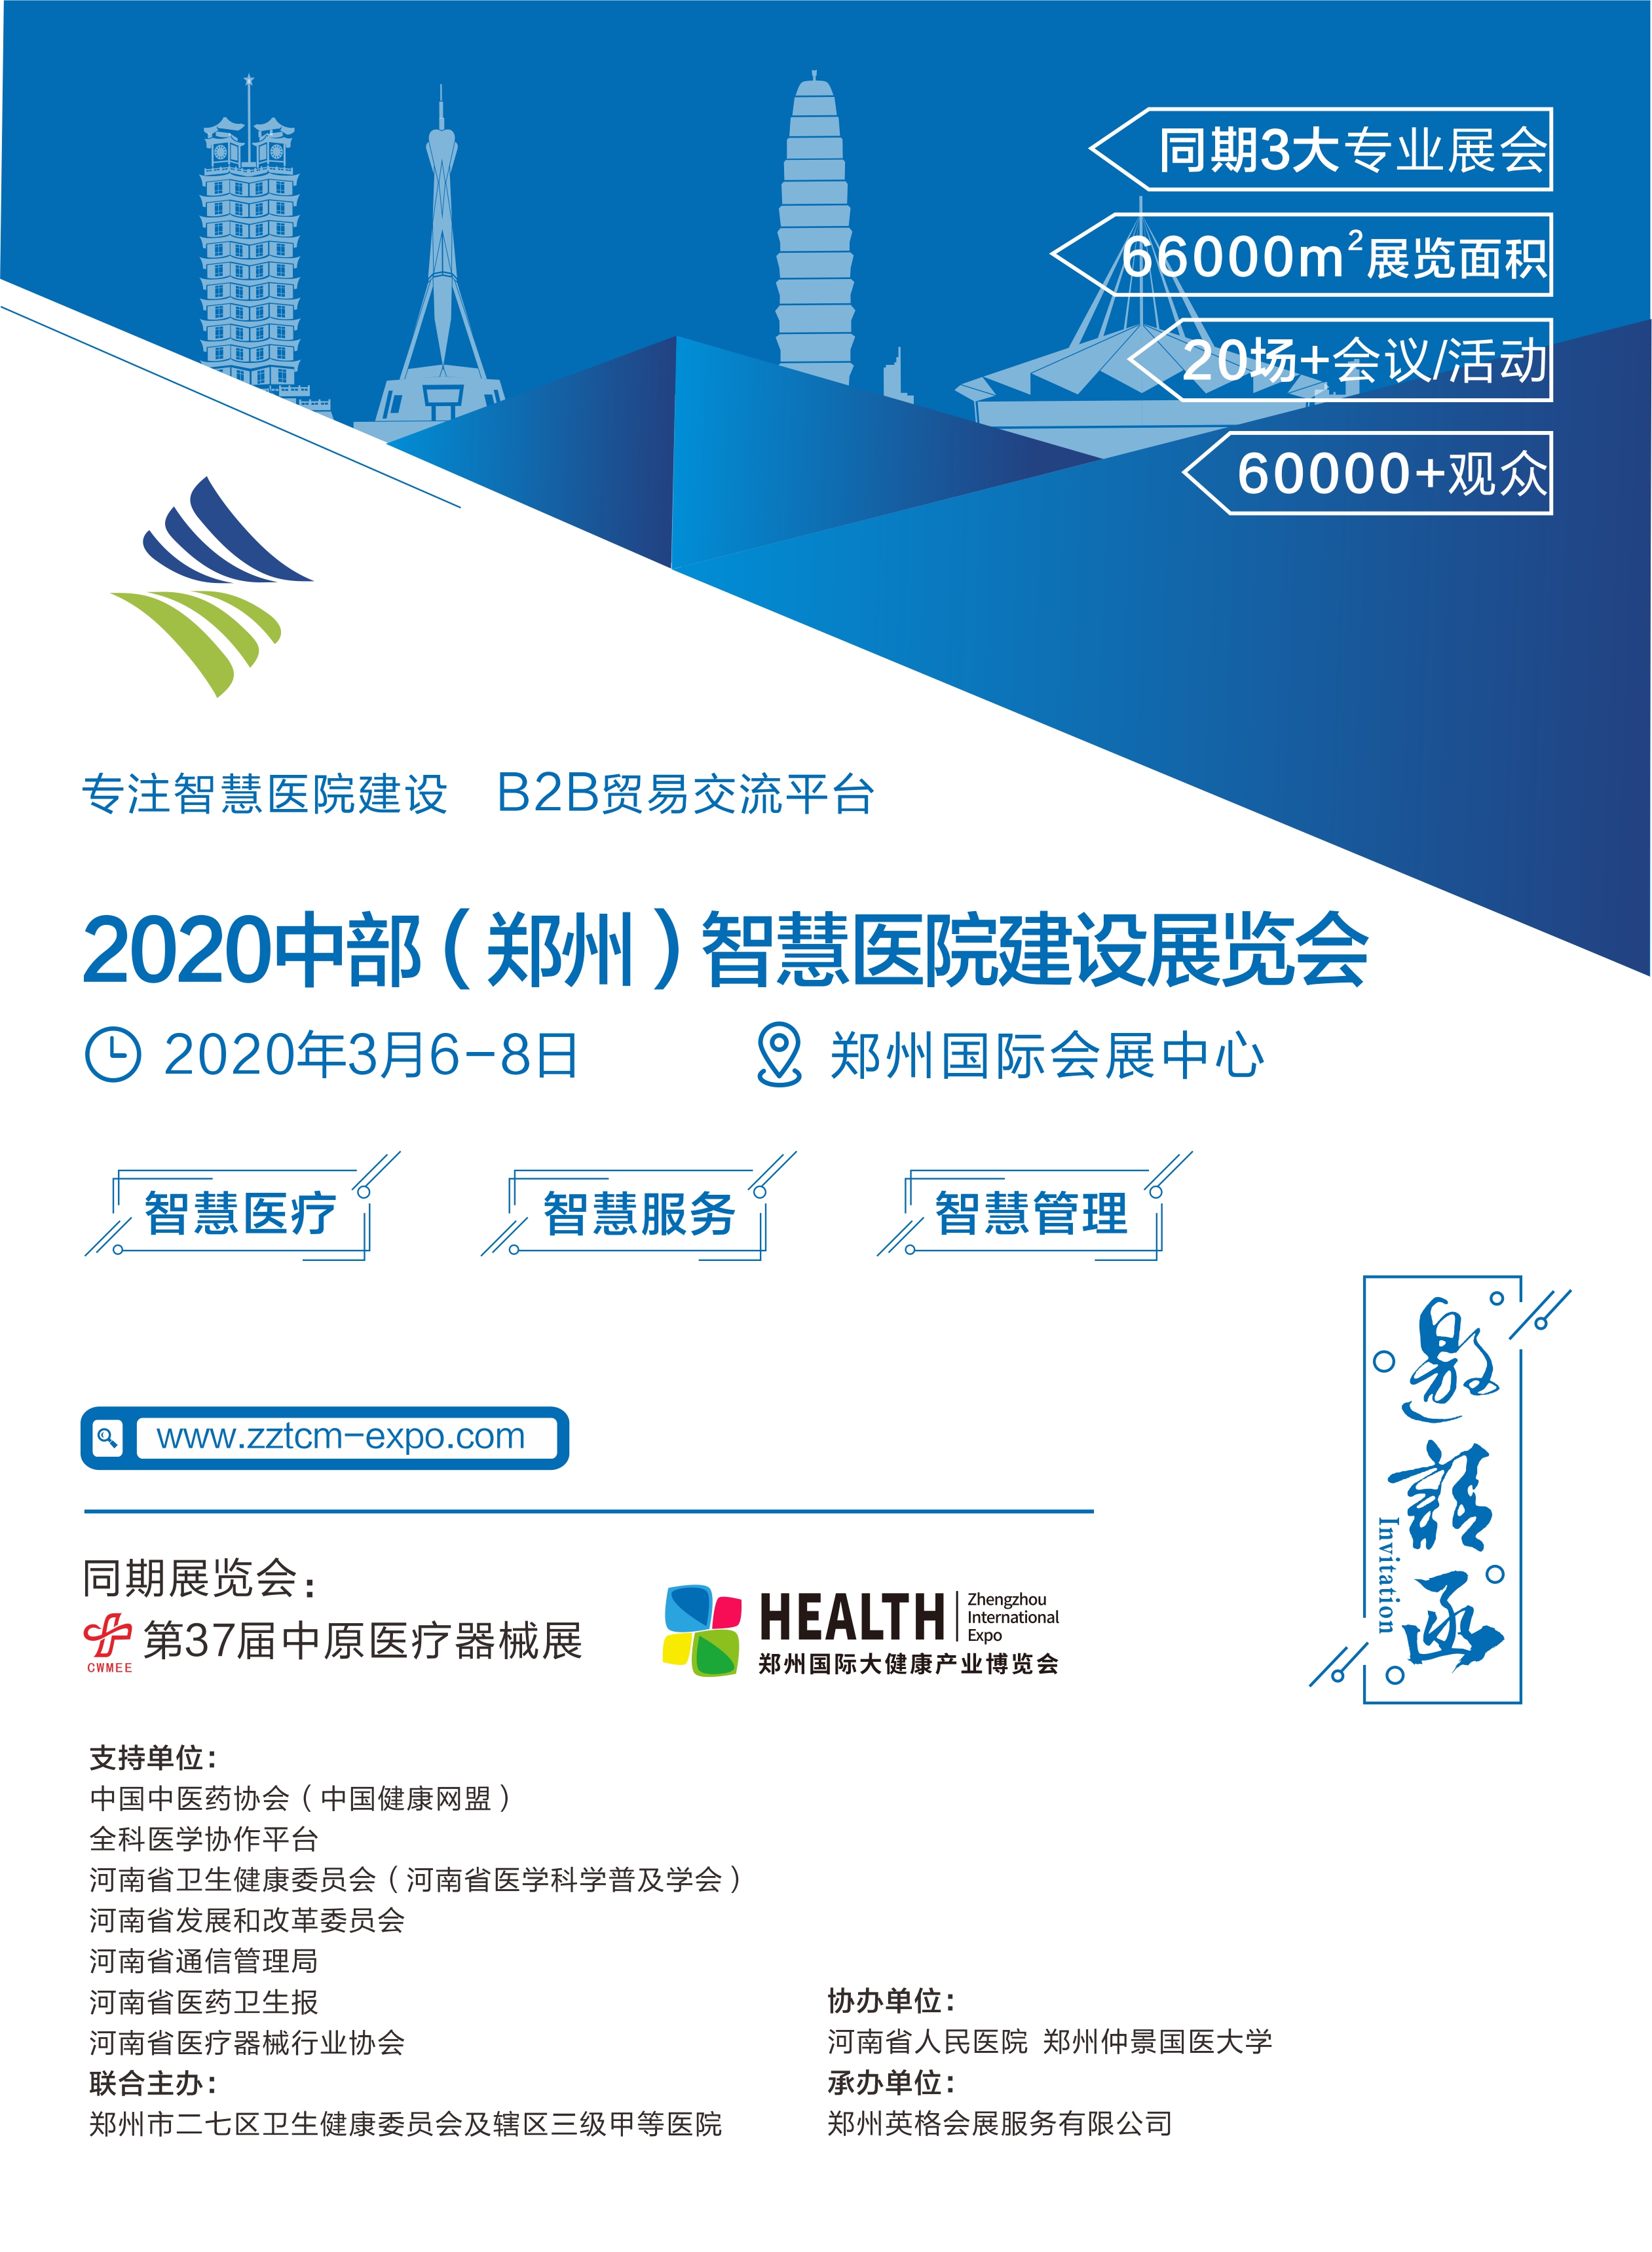 2020郑州智慧医院建设展览会助力医疗行业智慧升级图片